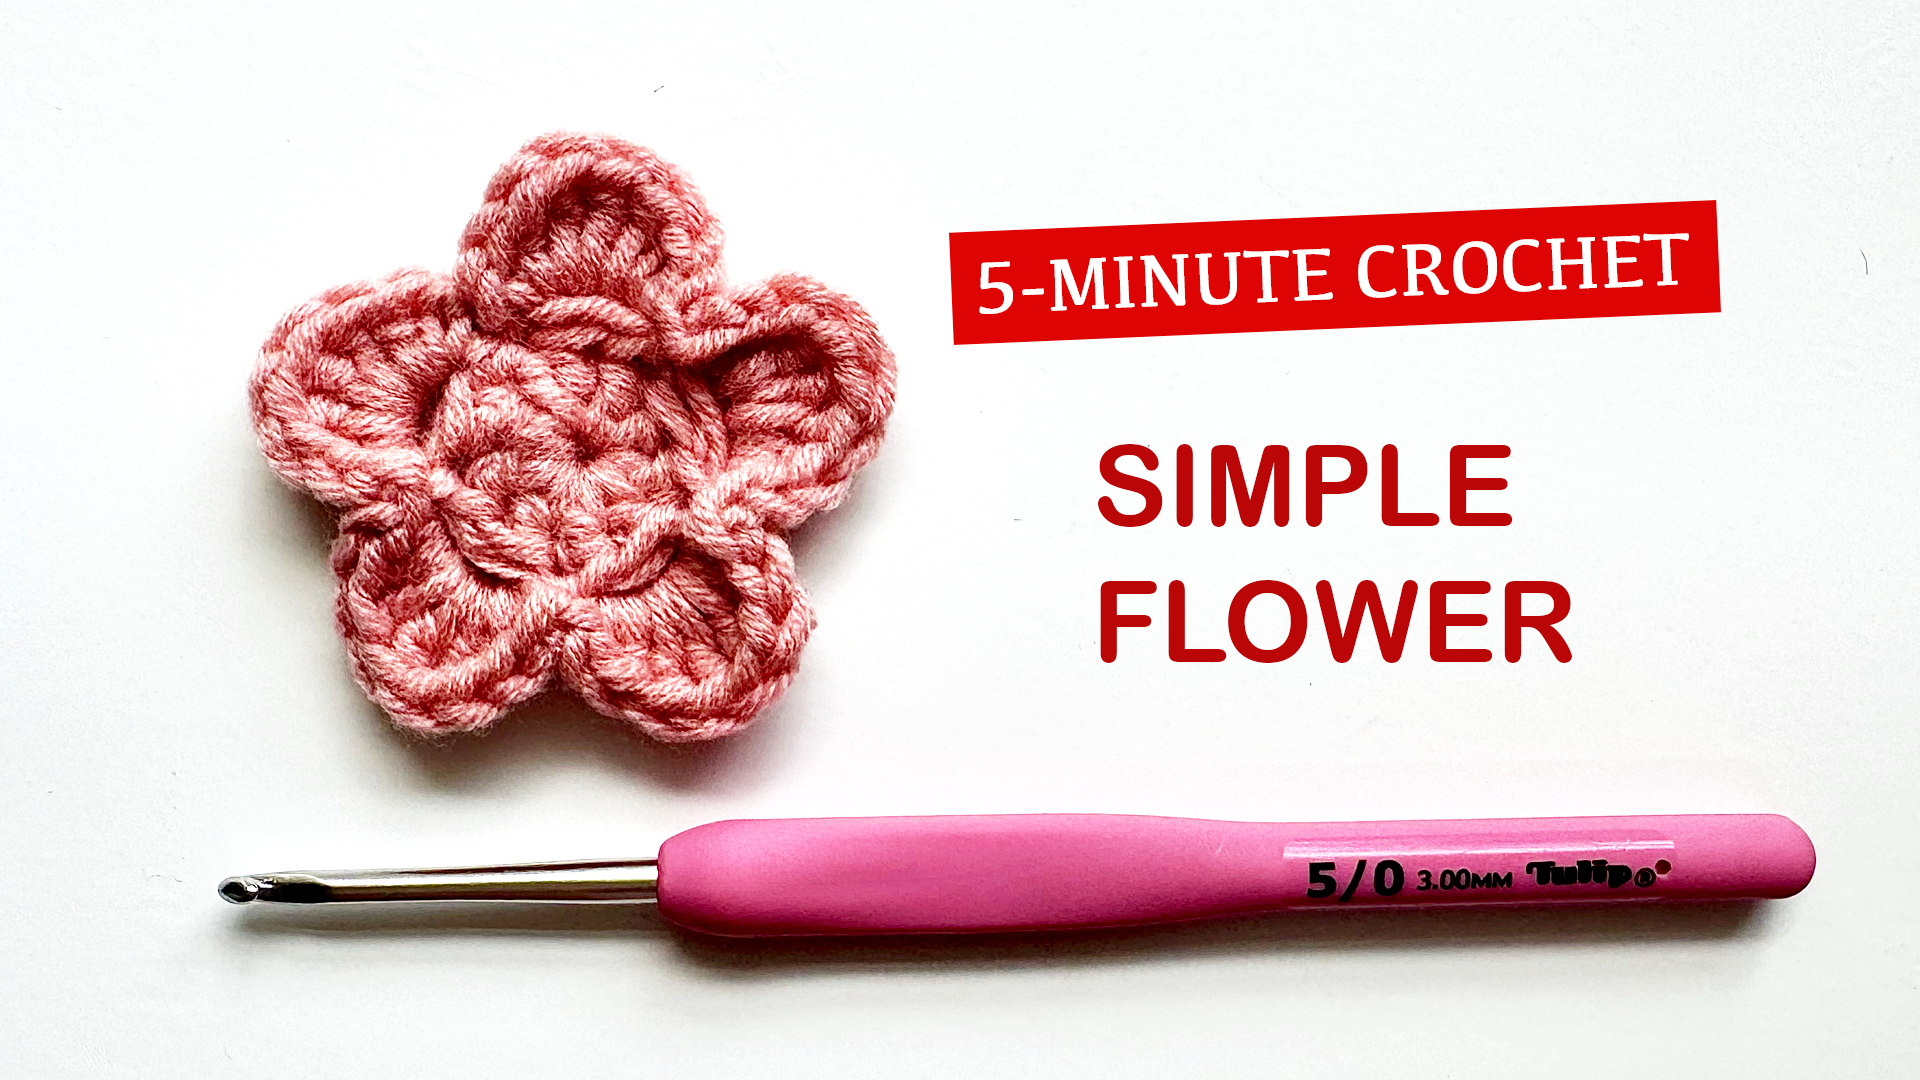 simple flower crochet pattern for beginner